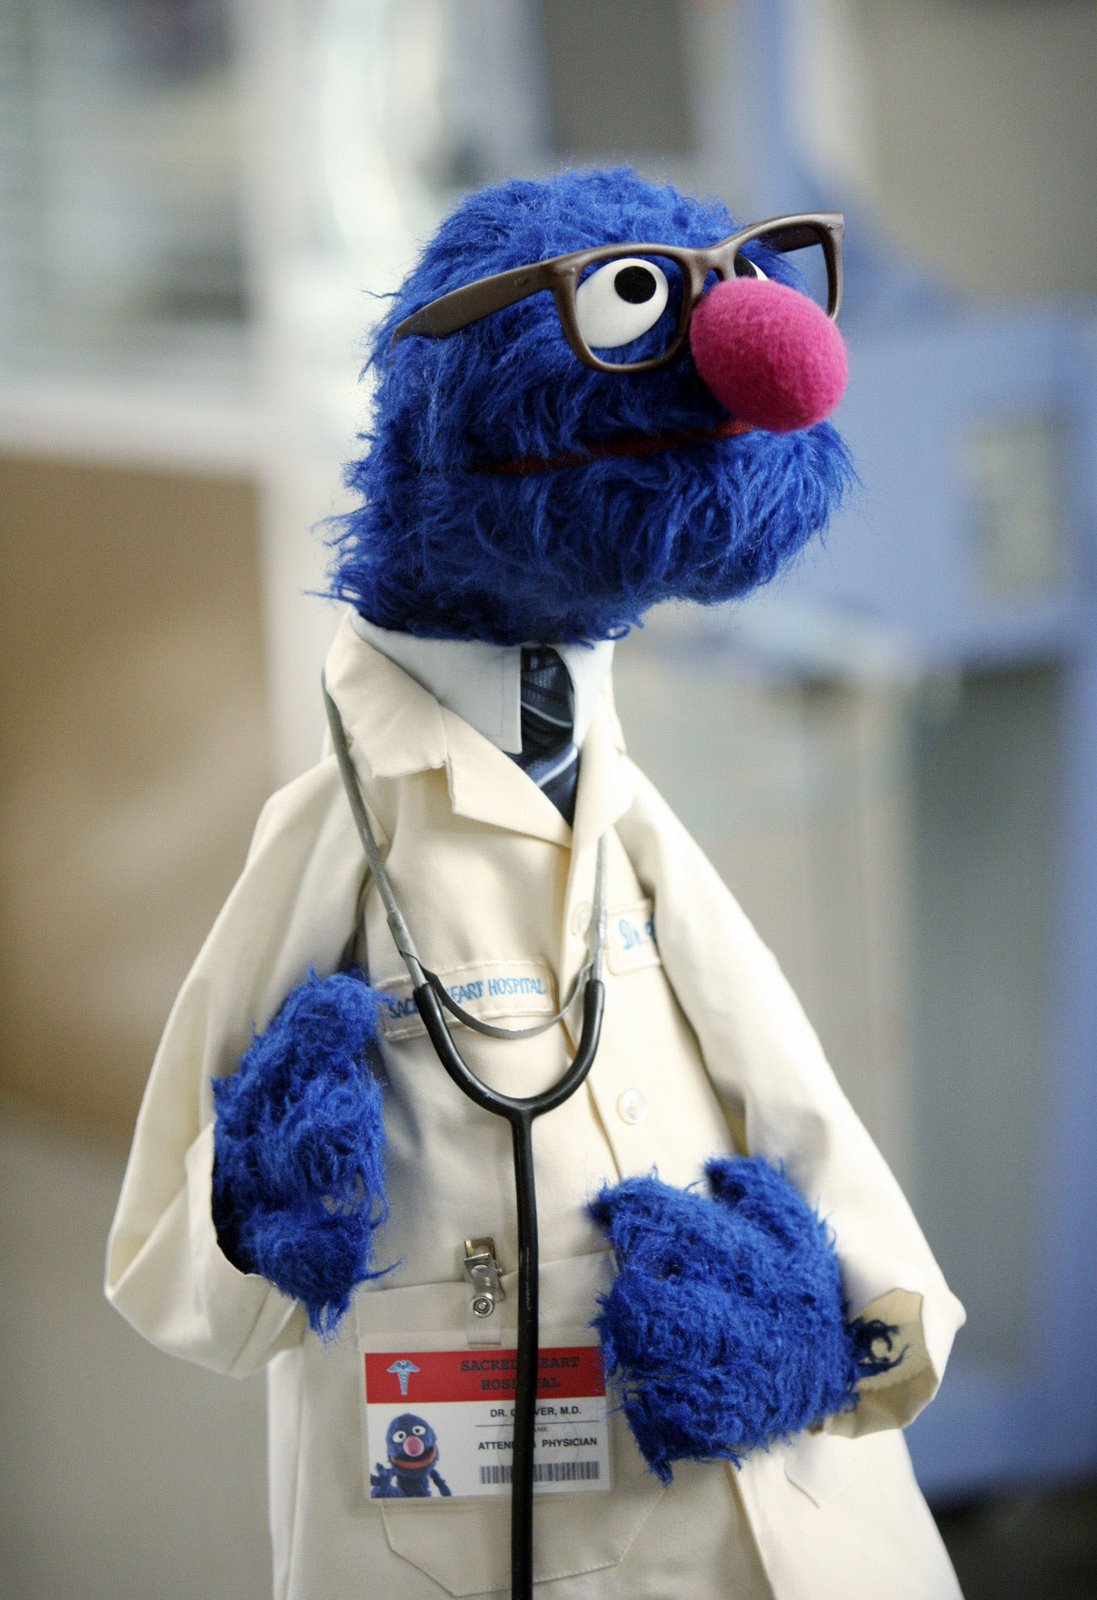 Dr. Elmo